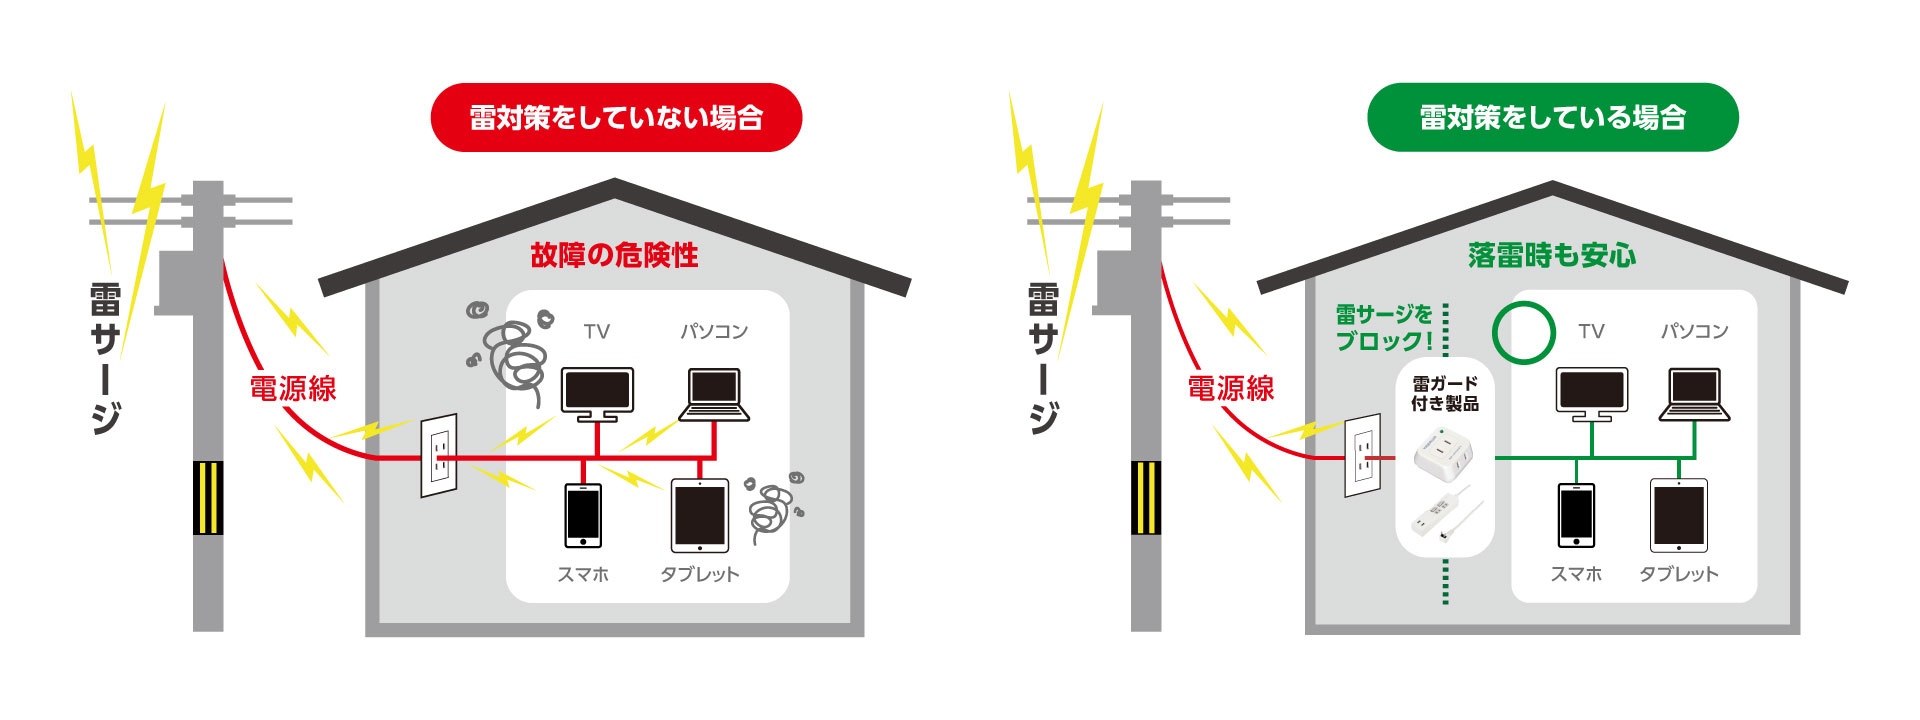 雷サージとは、雷により生じる瞬間的な高電圧を言います。雷サージは配線と電源コードを介して入り込み、接続している電気機器を破壊します。